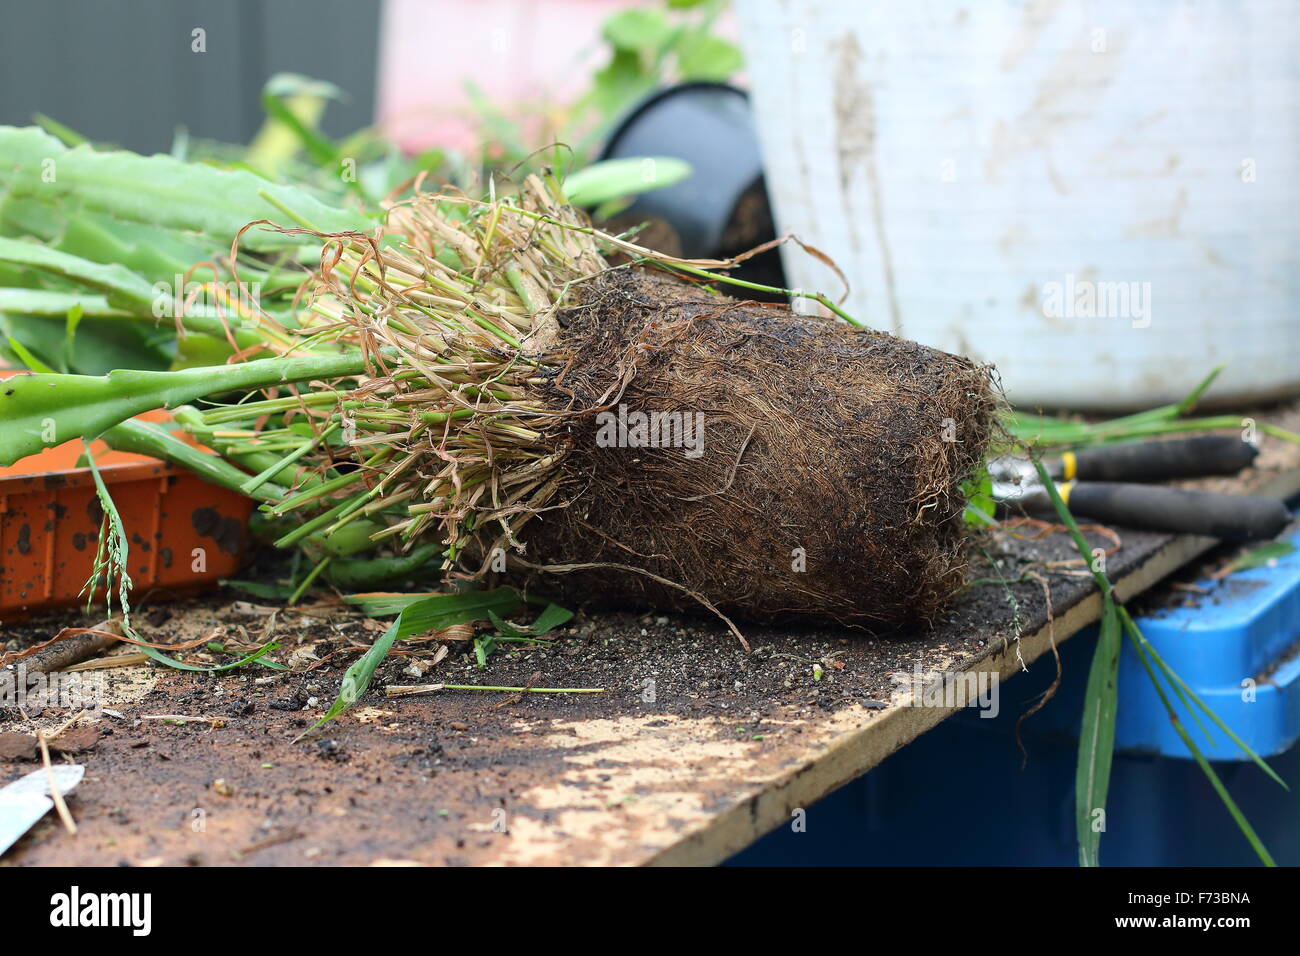 Root-gebundene oder über gewachsene Wurzeln der Epiphyllum oder auch bekannt als Orchid cactus Stockfoto